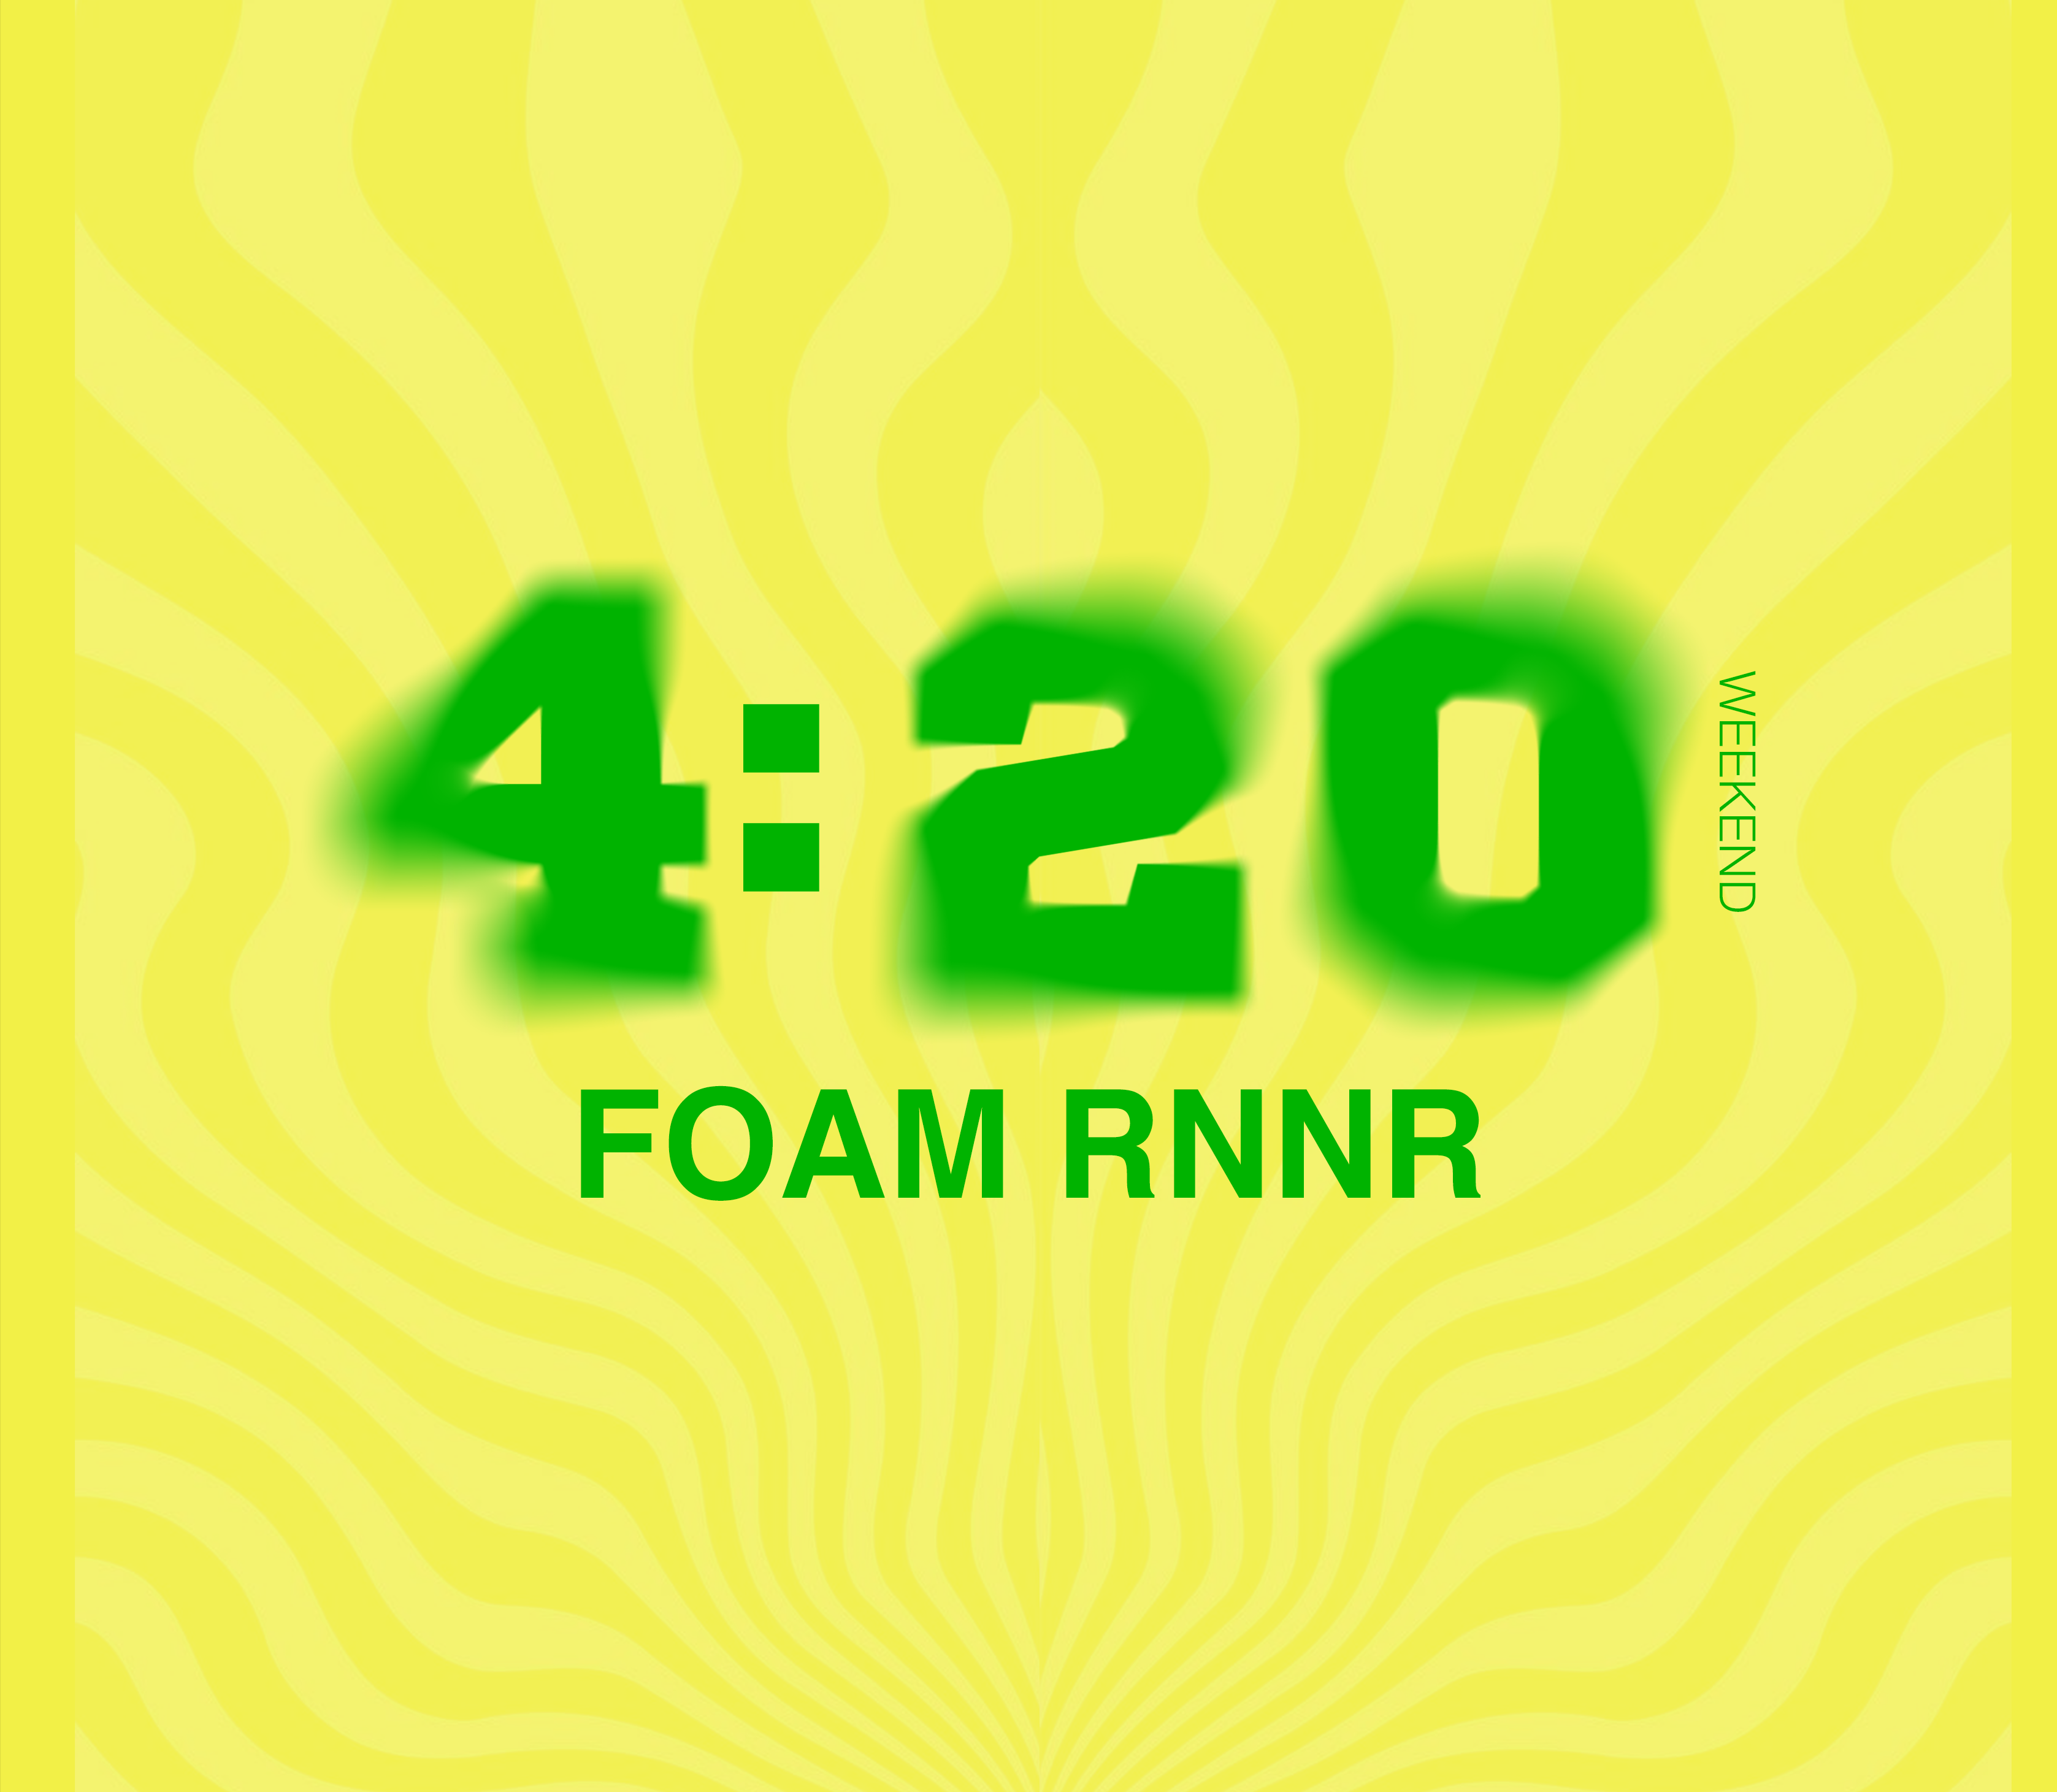 420 FOAM RNNR